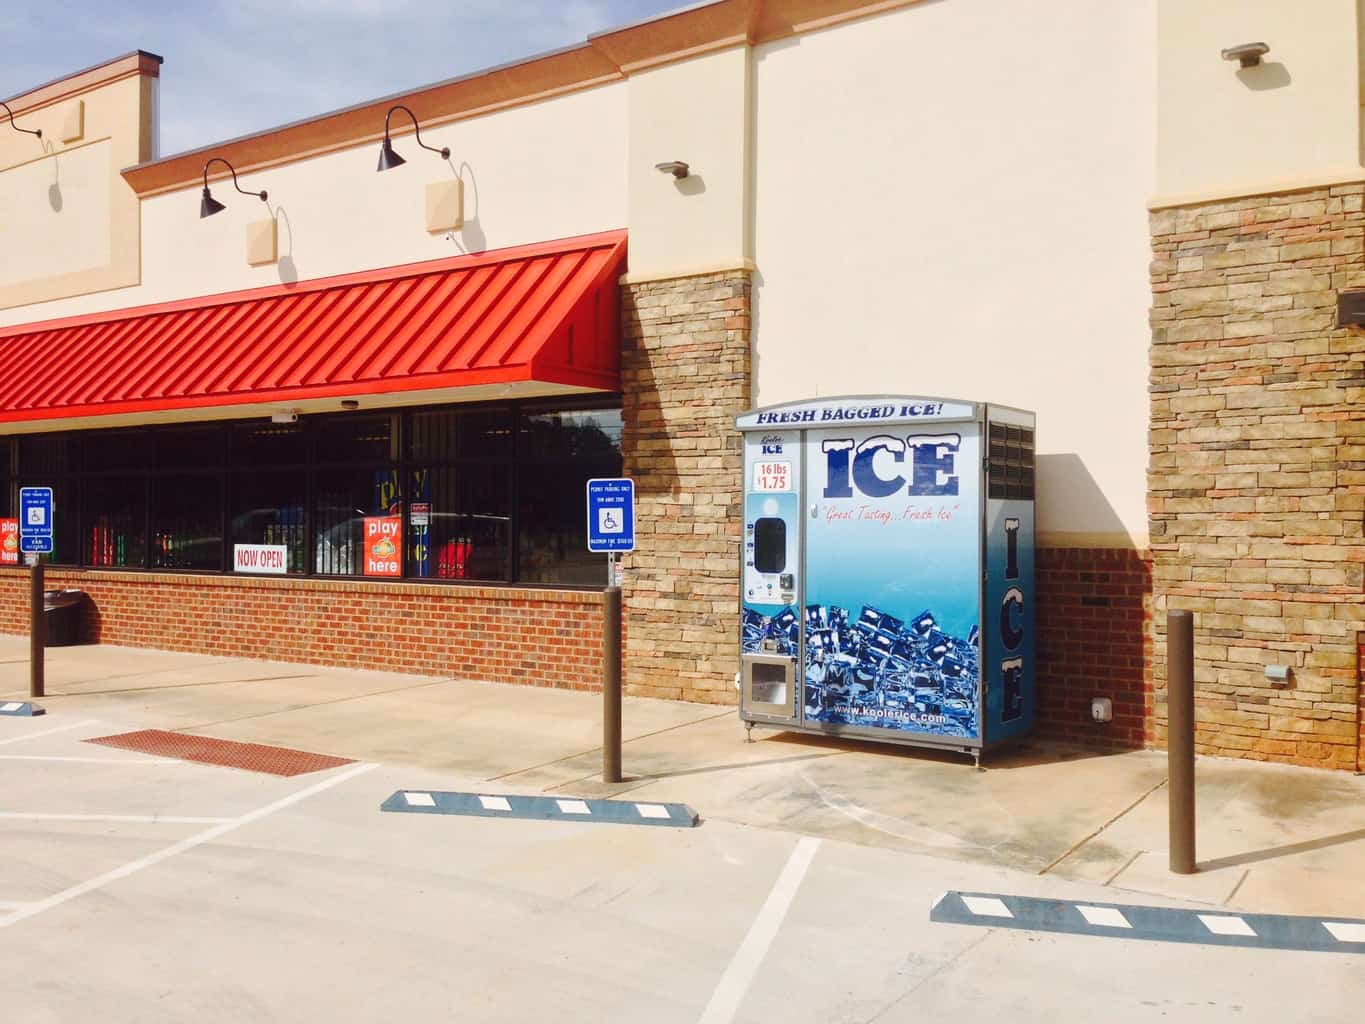 ice vending machine, ice vending, ice vending machine business, ice vending business